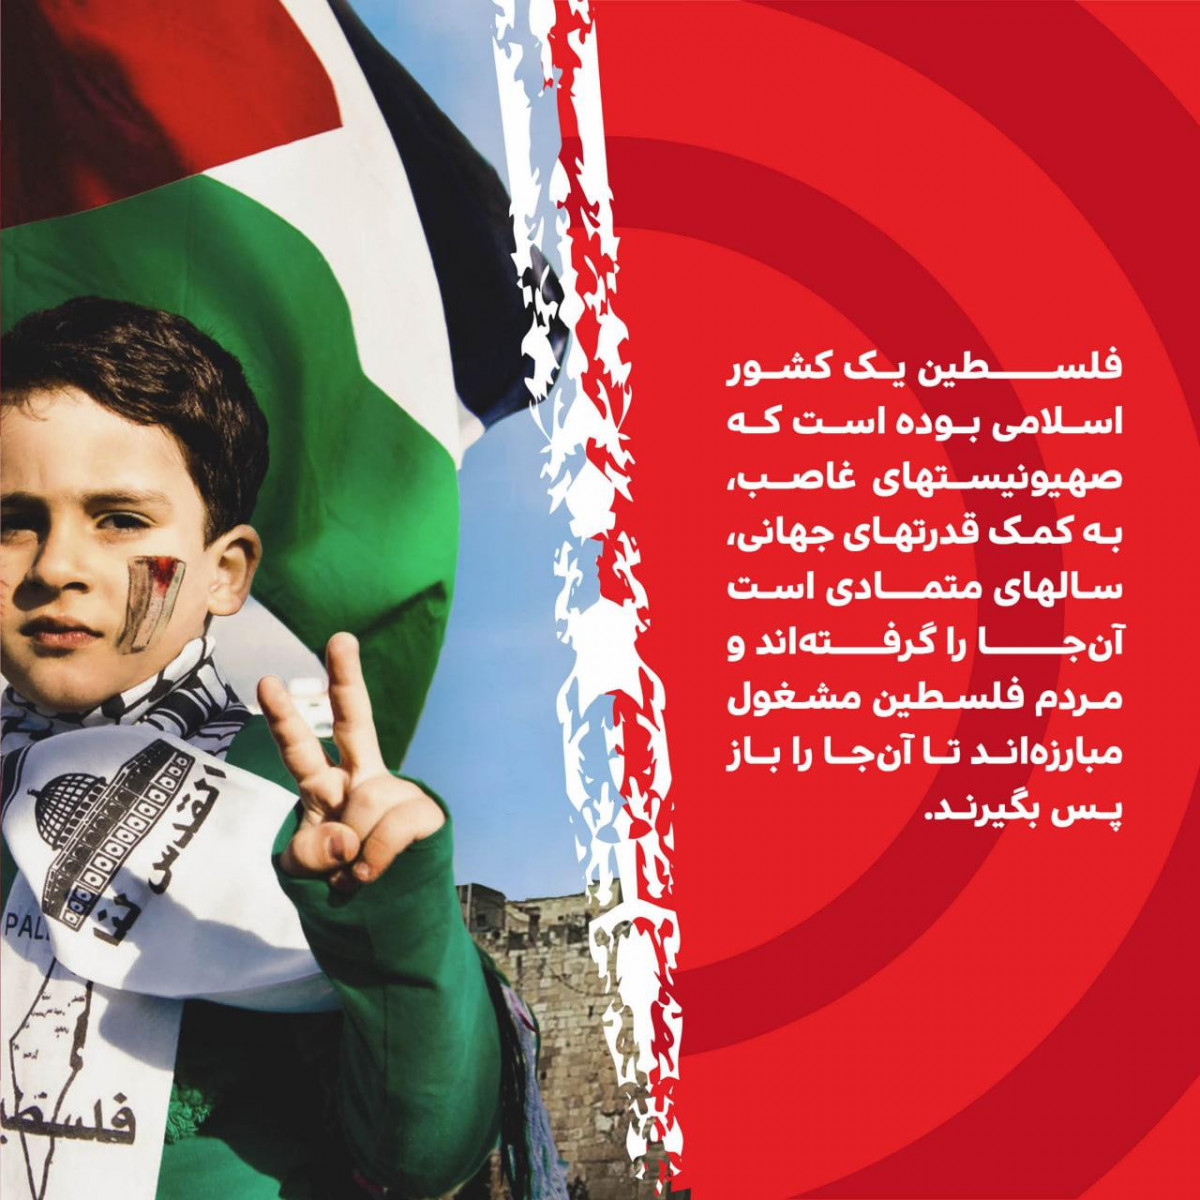 پوستر : فلسطین یک کشور اسلامی بوده است که صهیونیستهای غاصب